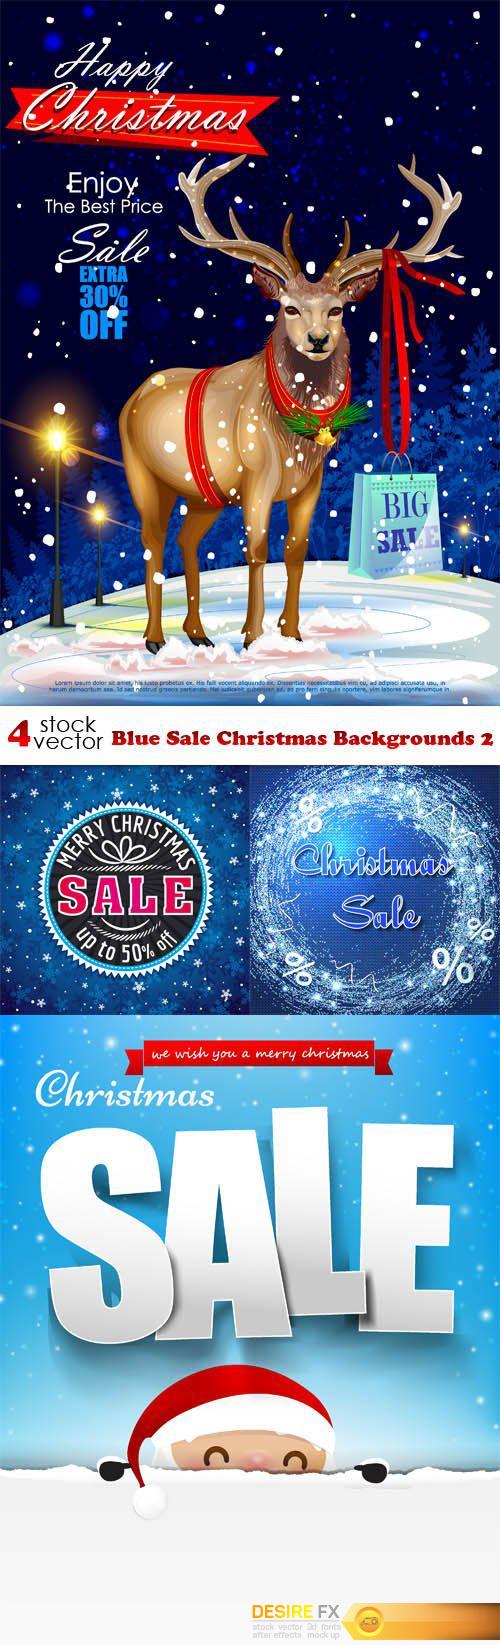 Vectors - Blue Sale Christmas Backgrounds 2